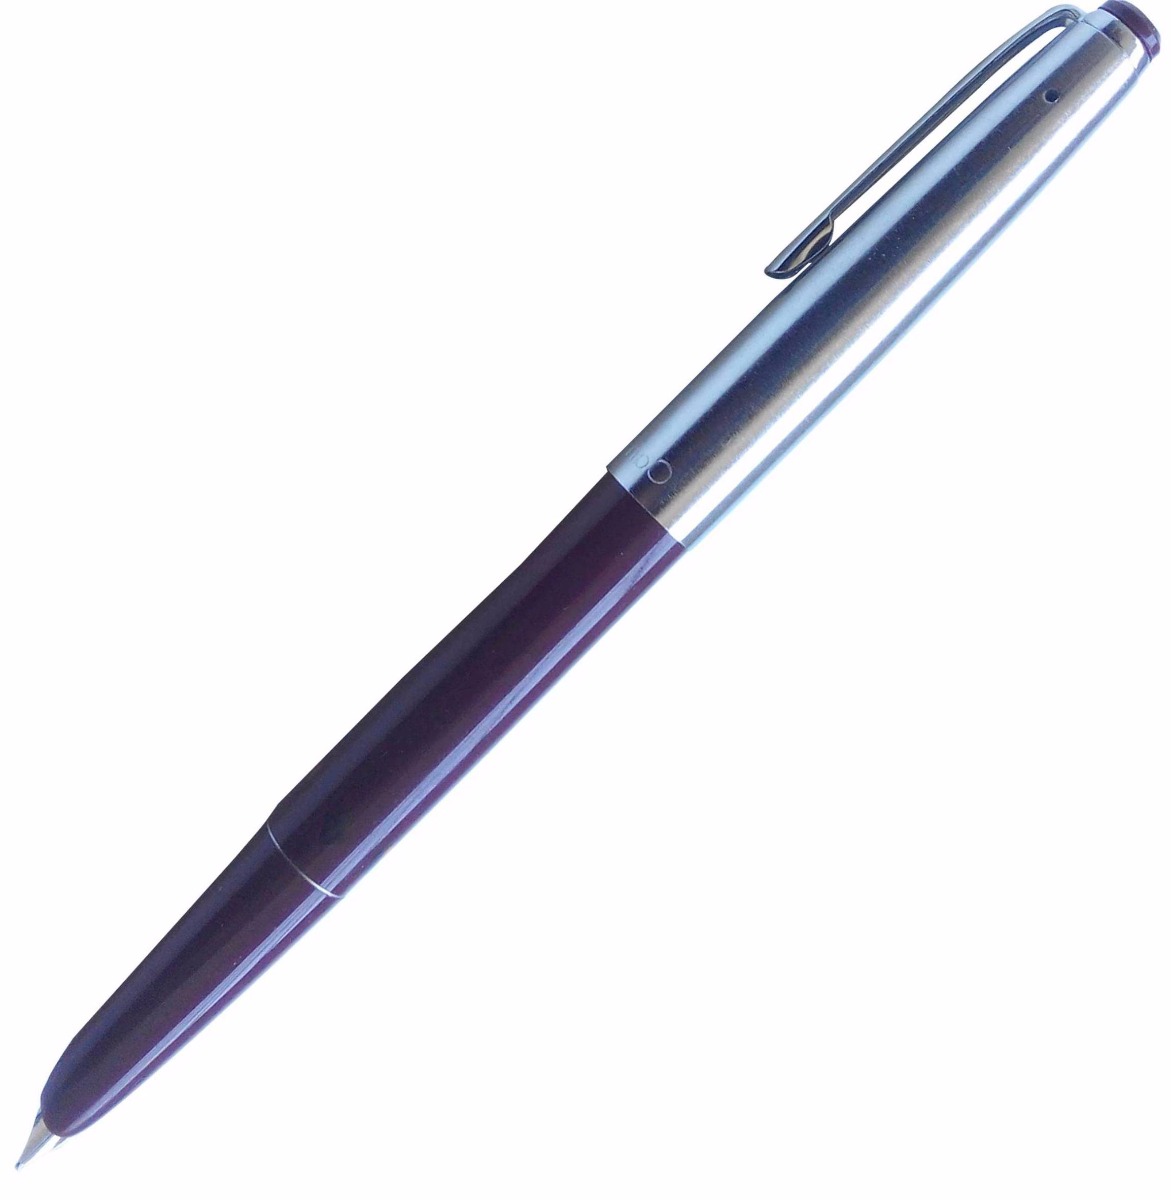  Camlin 47 Marrown  Color Body with Silver Clip Medium Nib Piston Type Fountain Pen SKU 11060